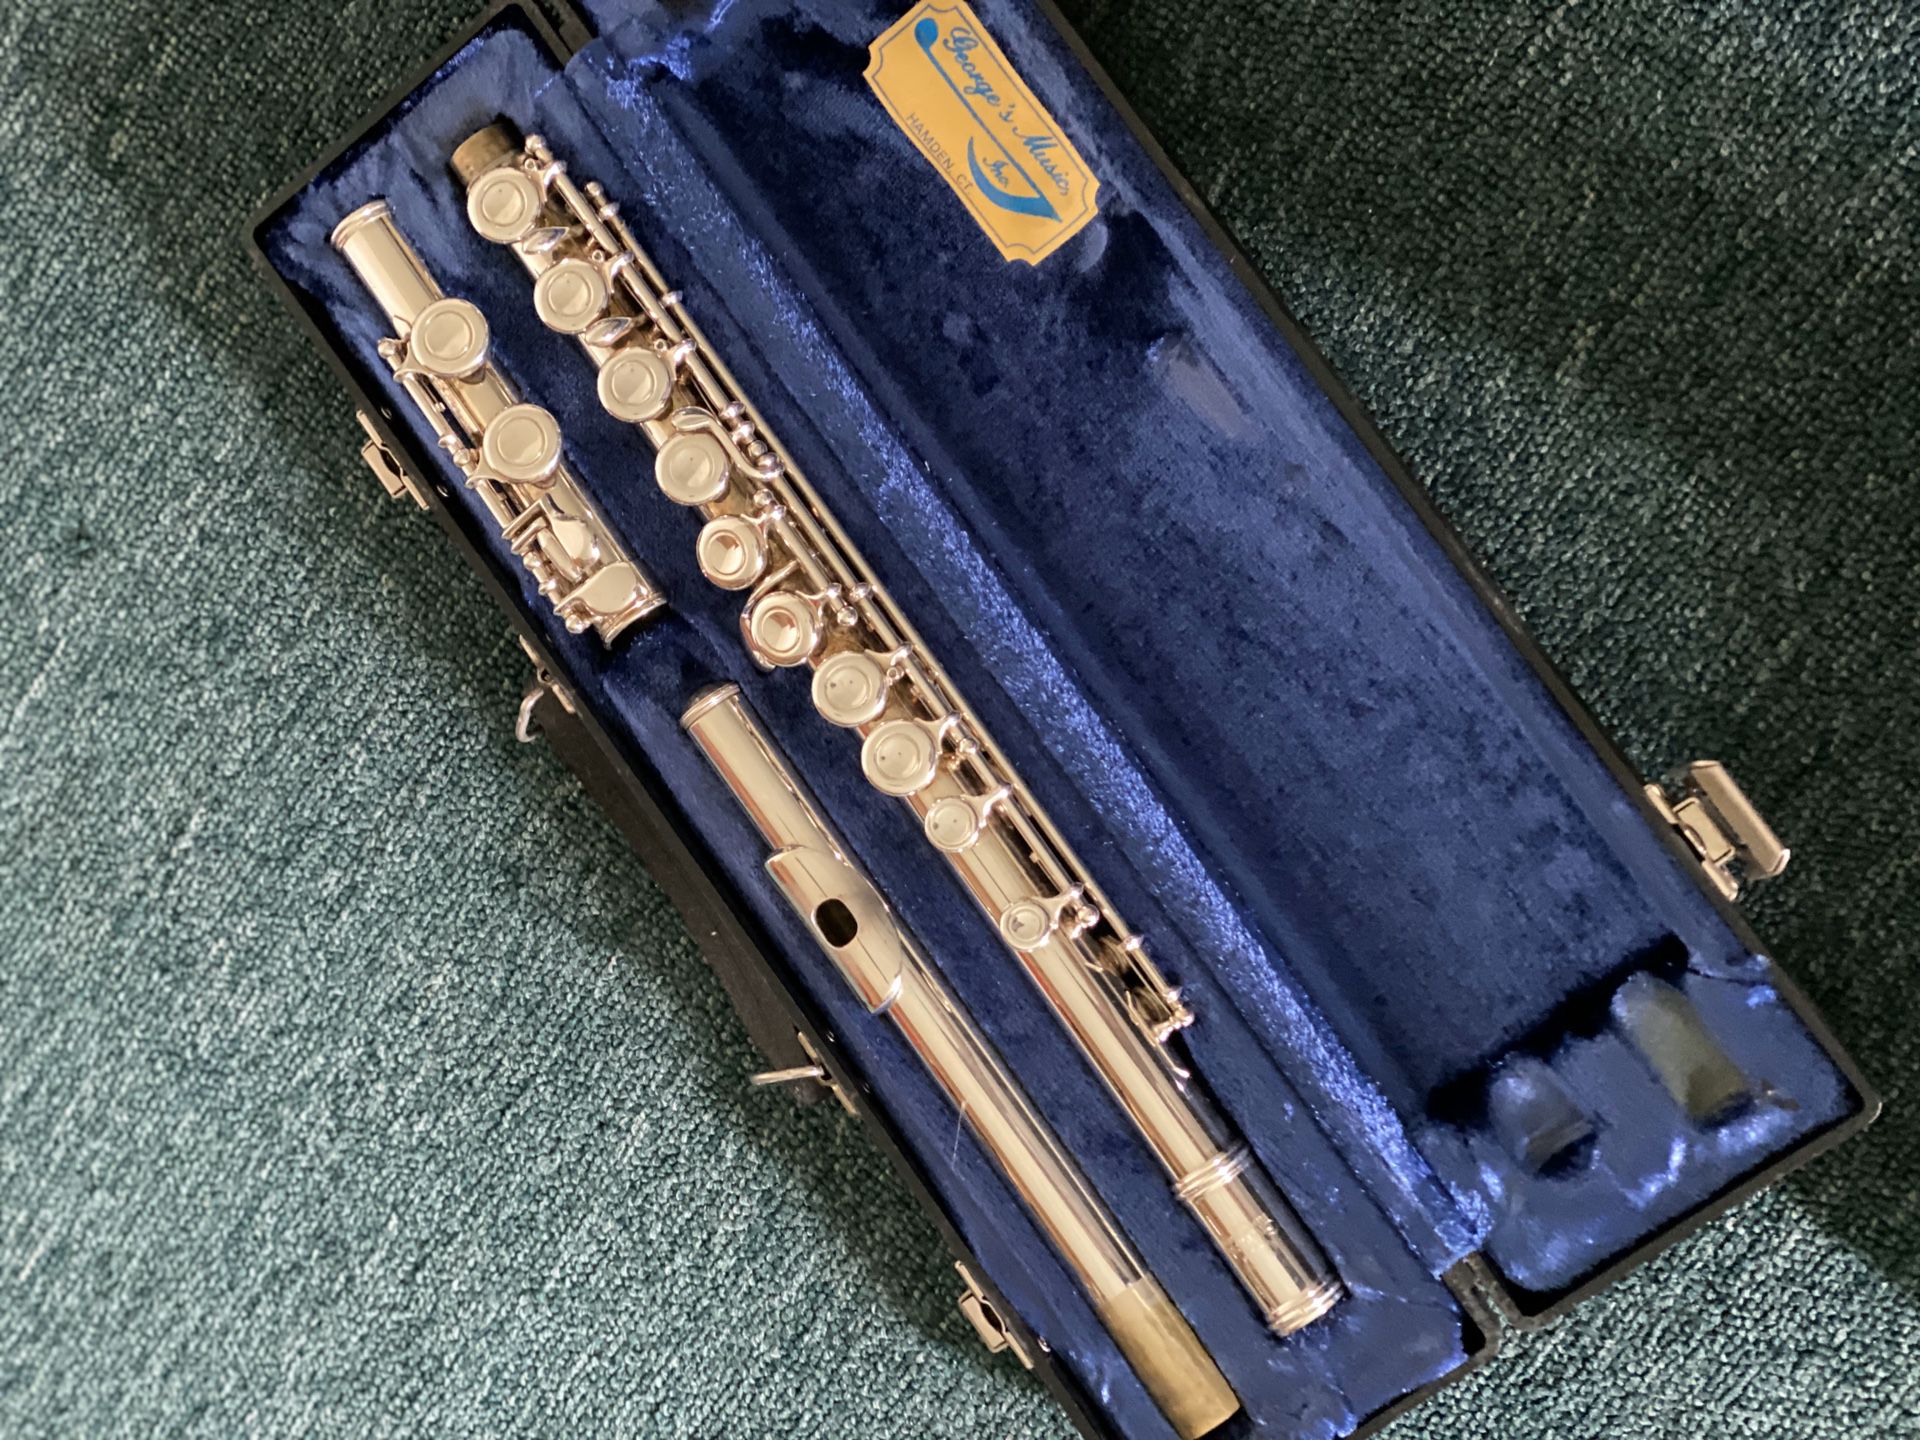 Used flute